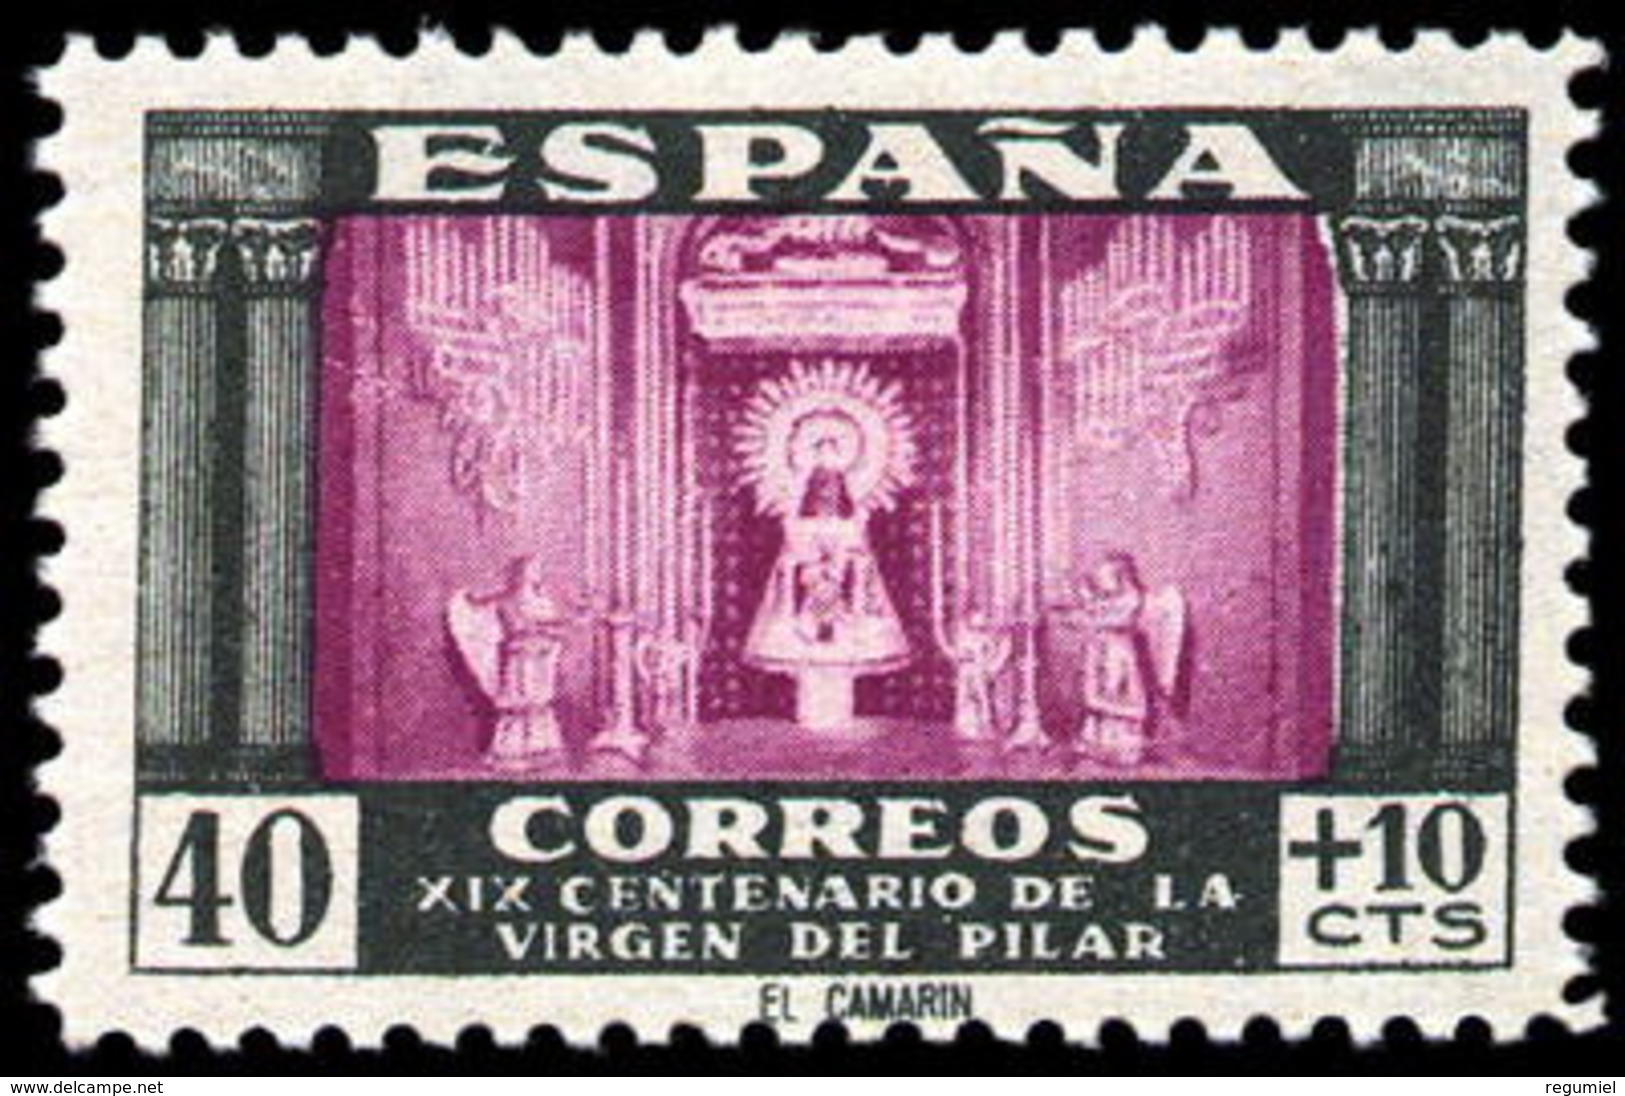 España 0998 ** Pilar El Camarin. 1946 - Nuevos